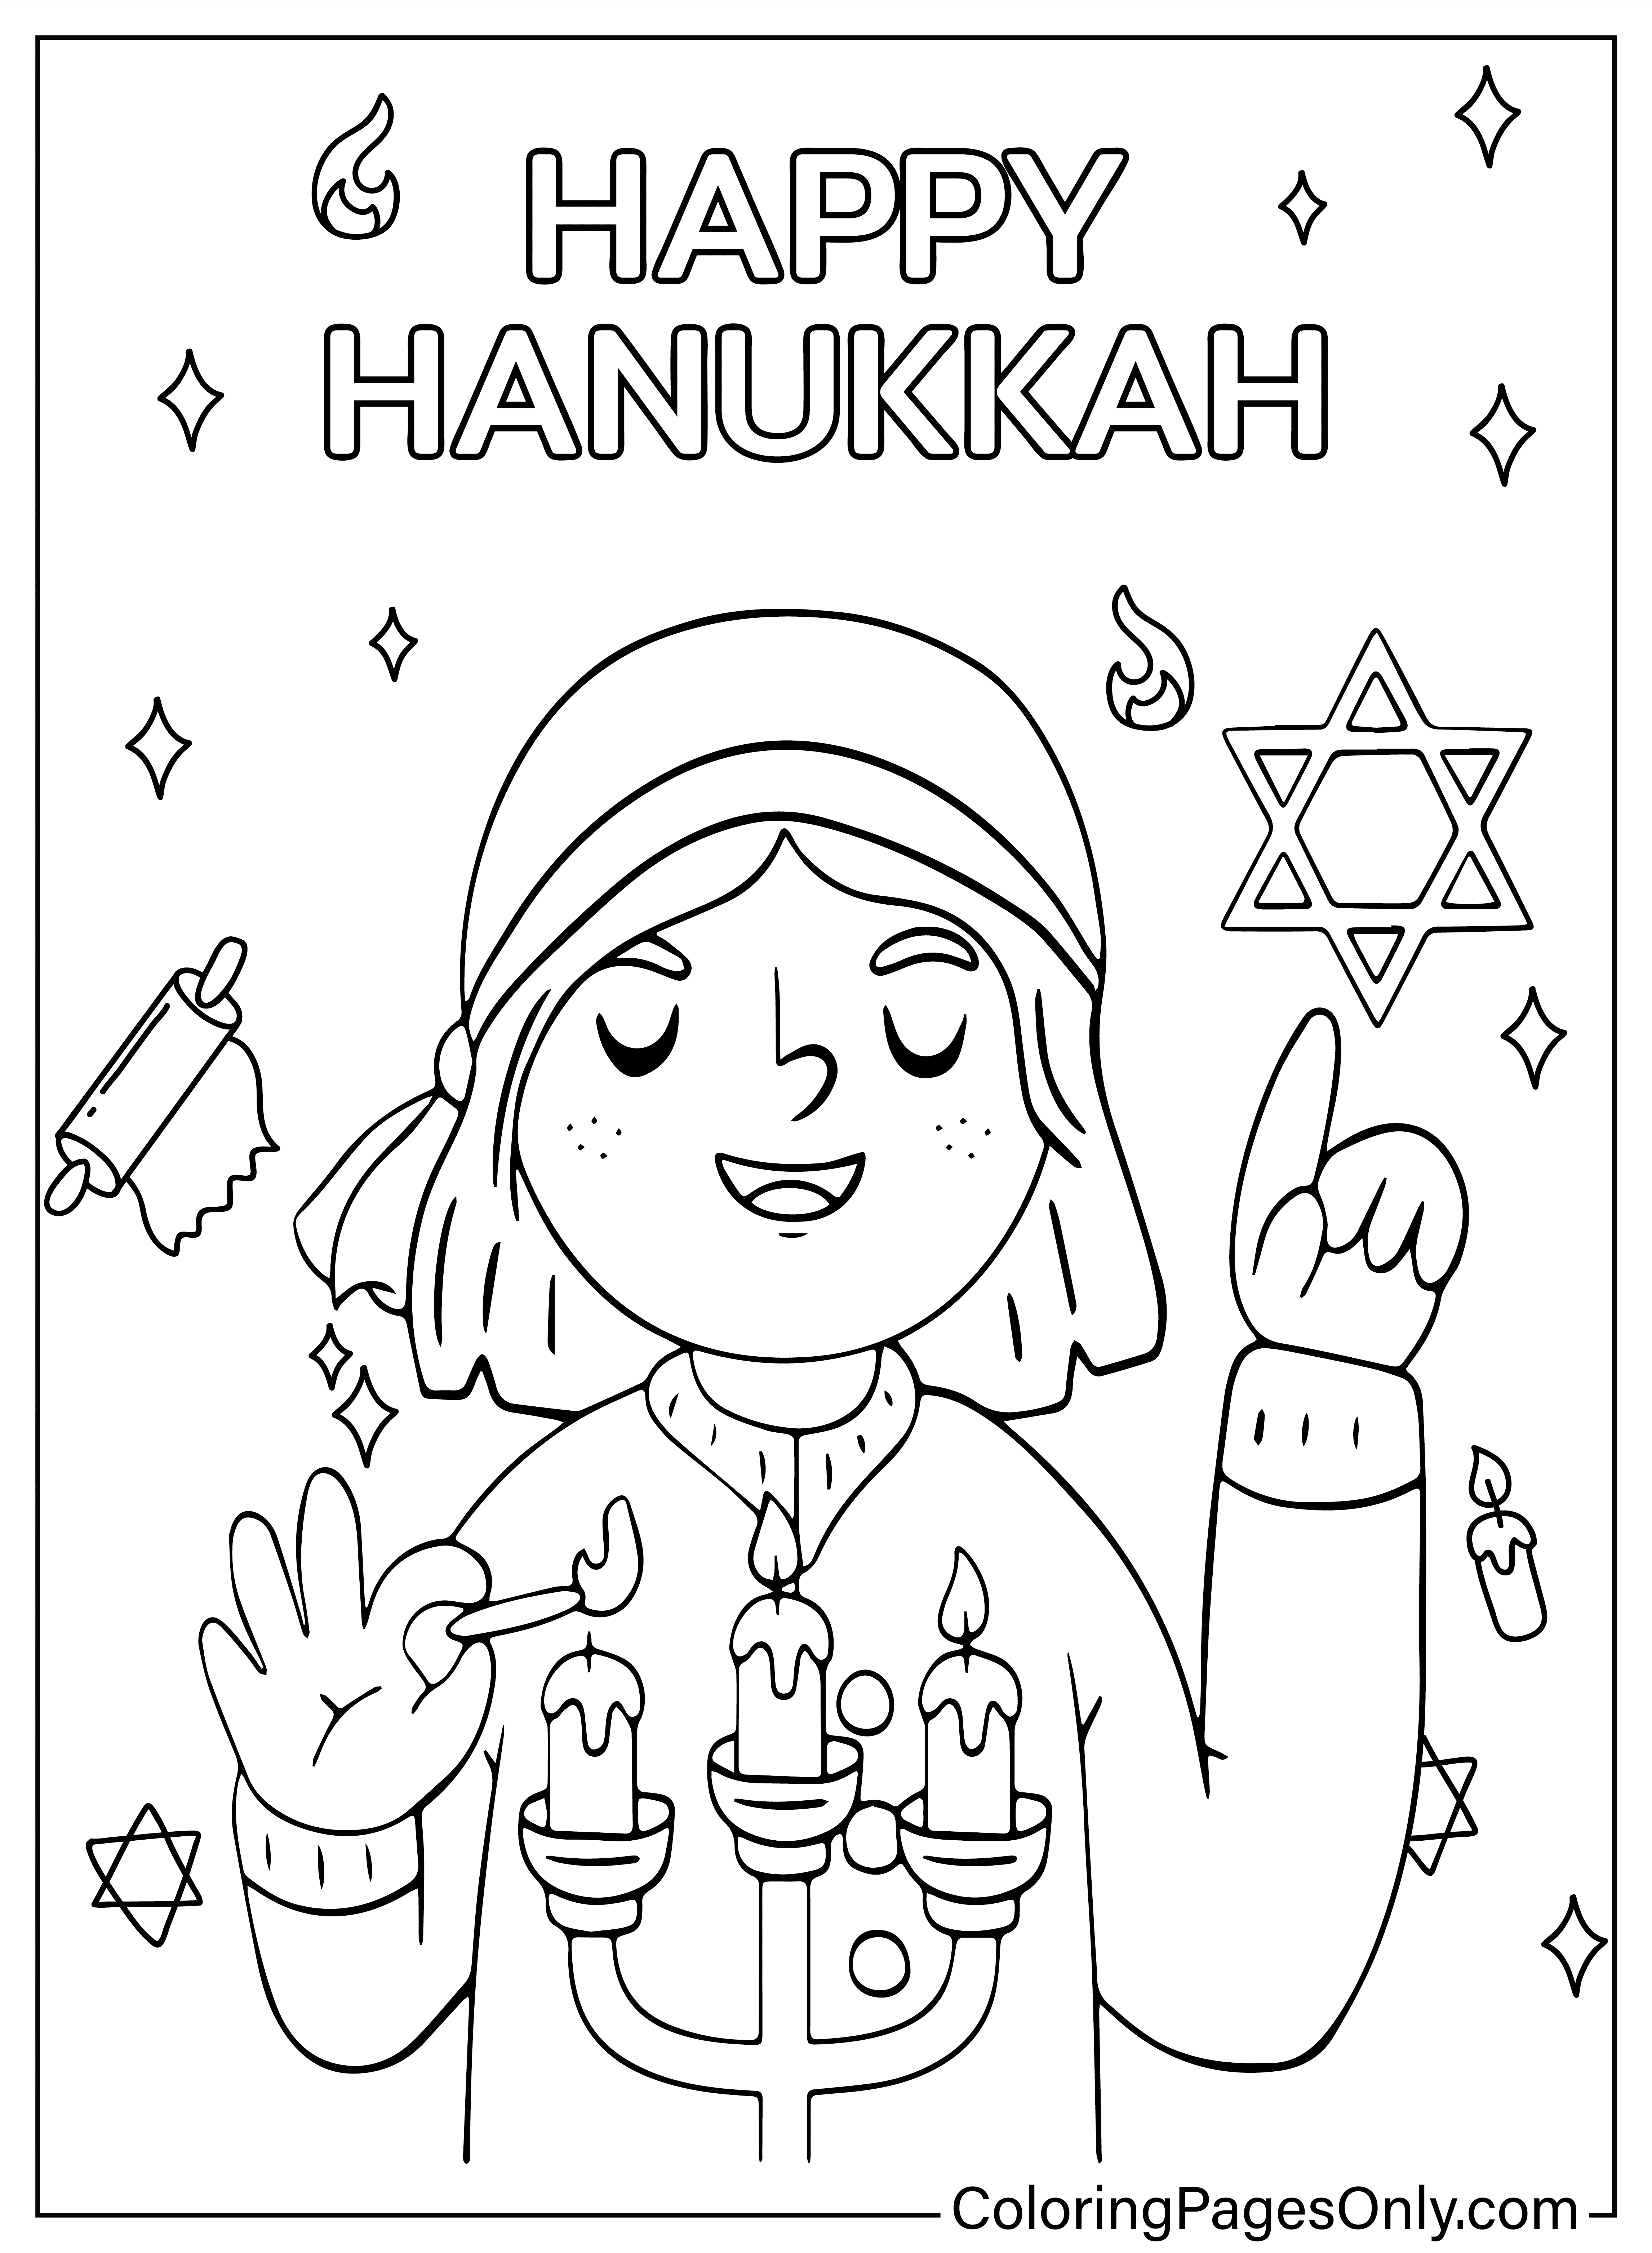 Página para colorir de Hanukkah de Hanukkah